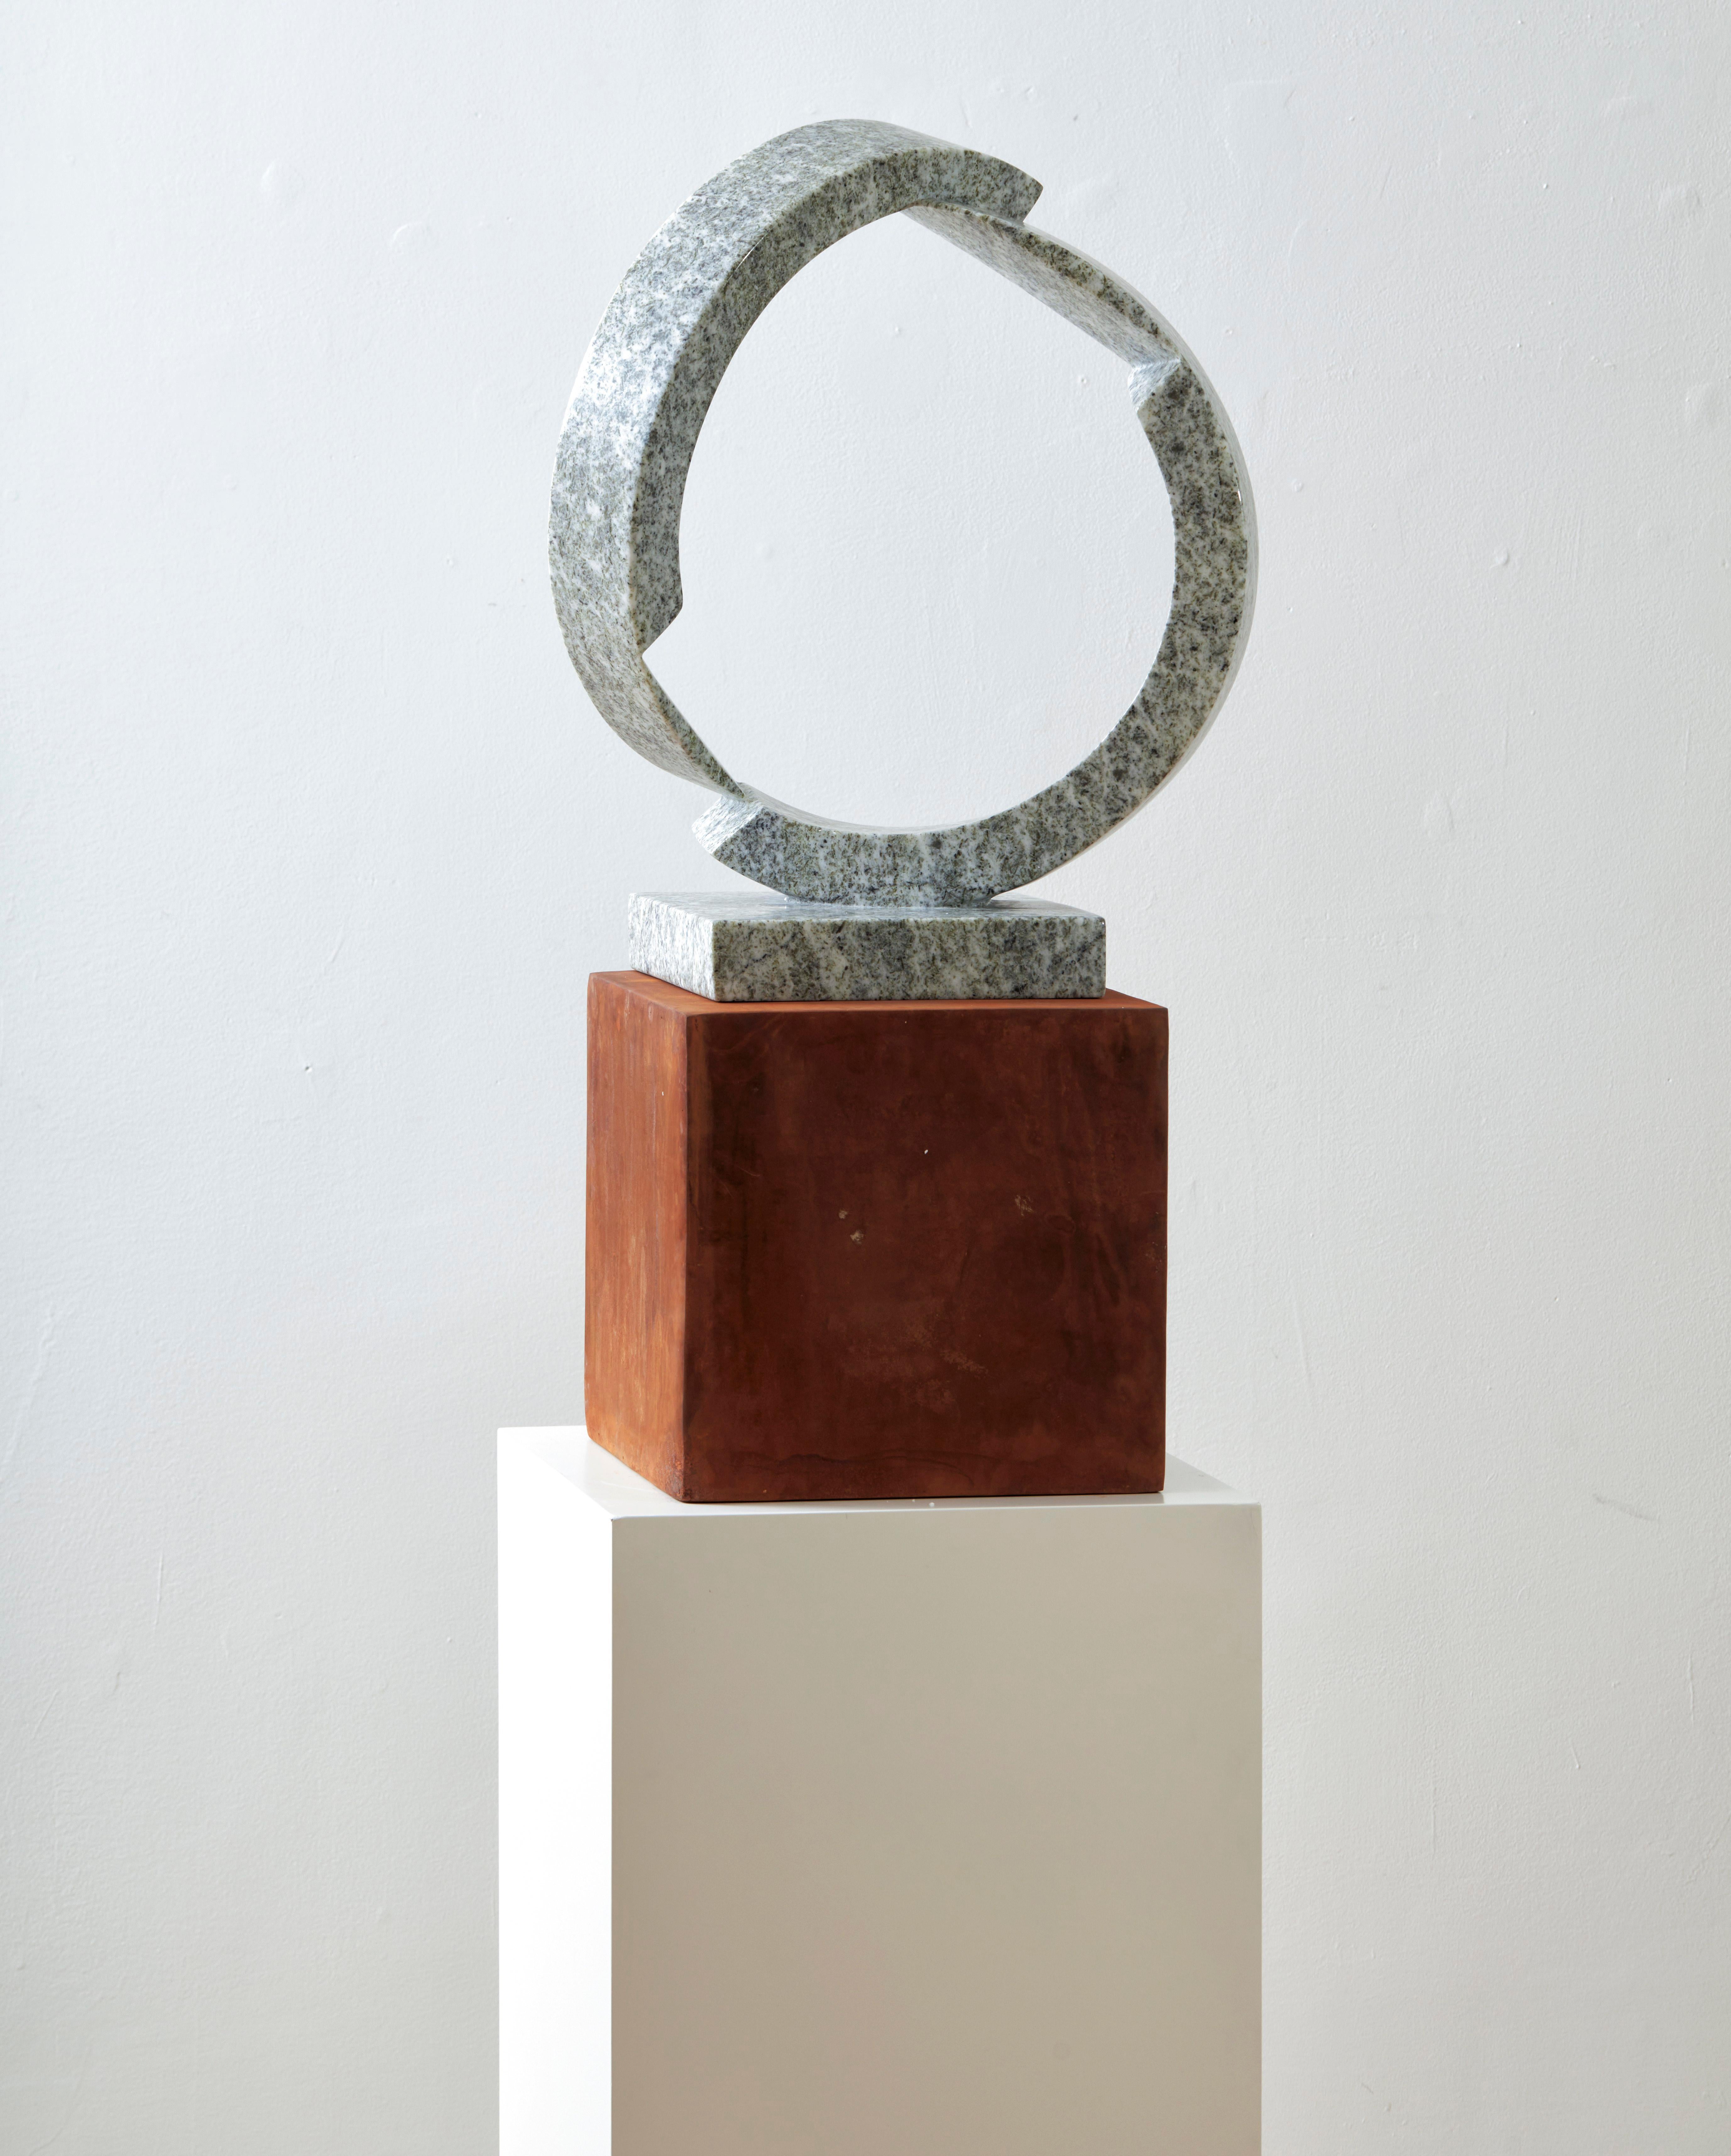 Serpentine ＆Iron Sculpture “Solitude”, 2020  - Brown Abstract Sculpture by Hsu Yun Chin